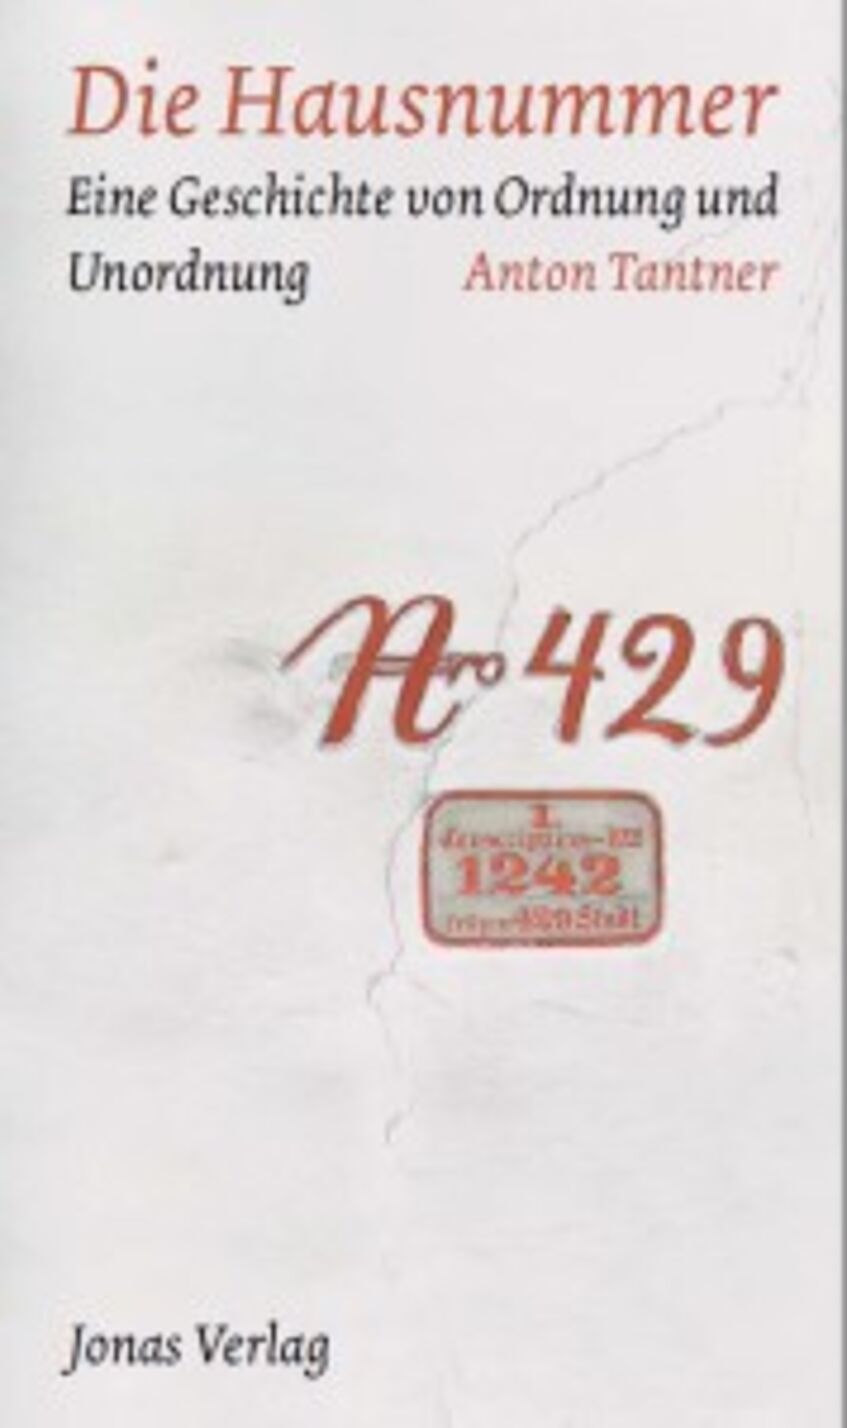 Tantner, Anton: Die Hausnummer. Eine Geschichte von Ordnung und Unordnung. Marburg: Jonas Verlag, 2007.